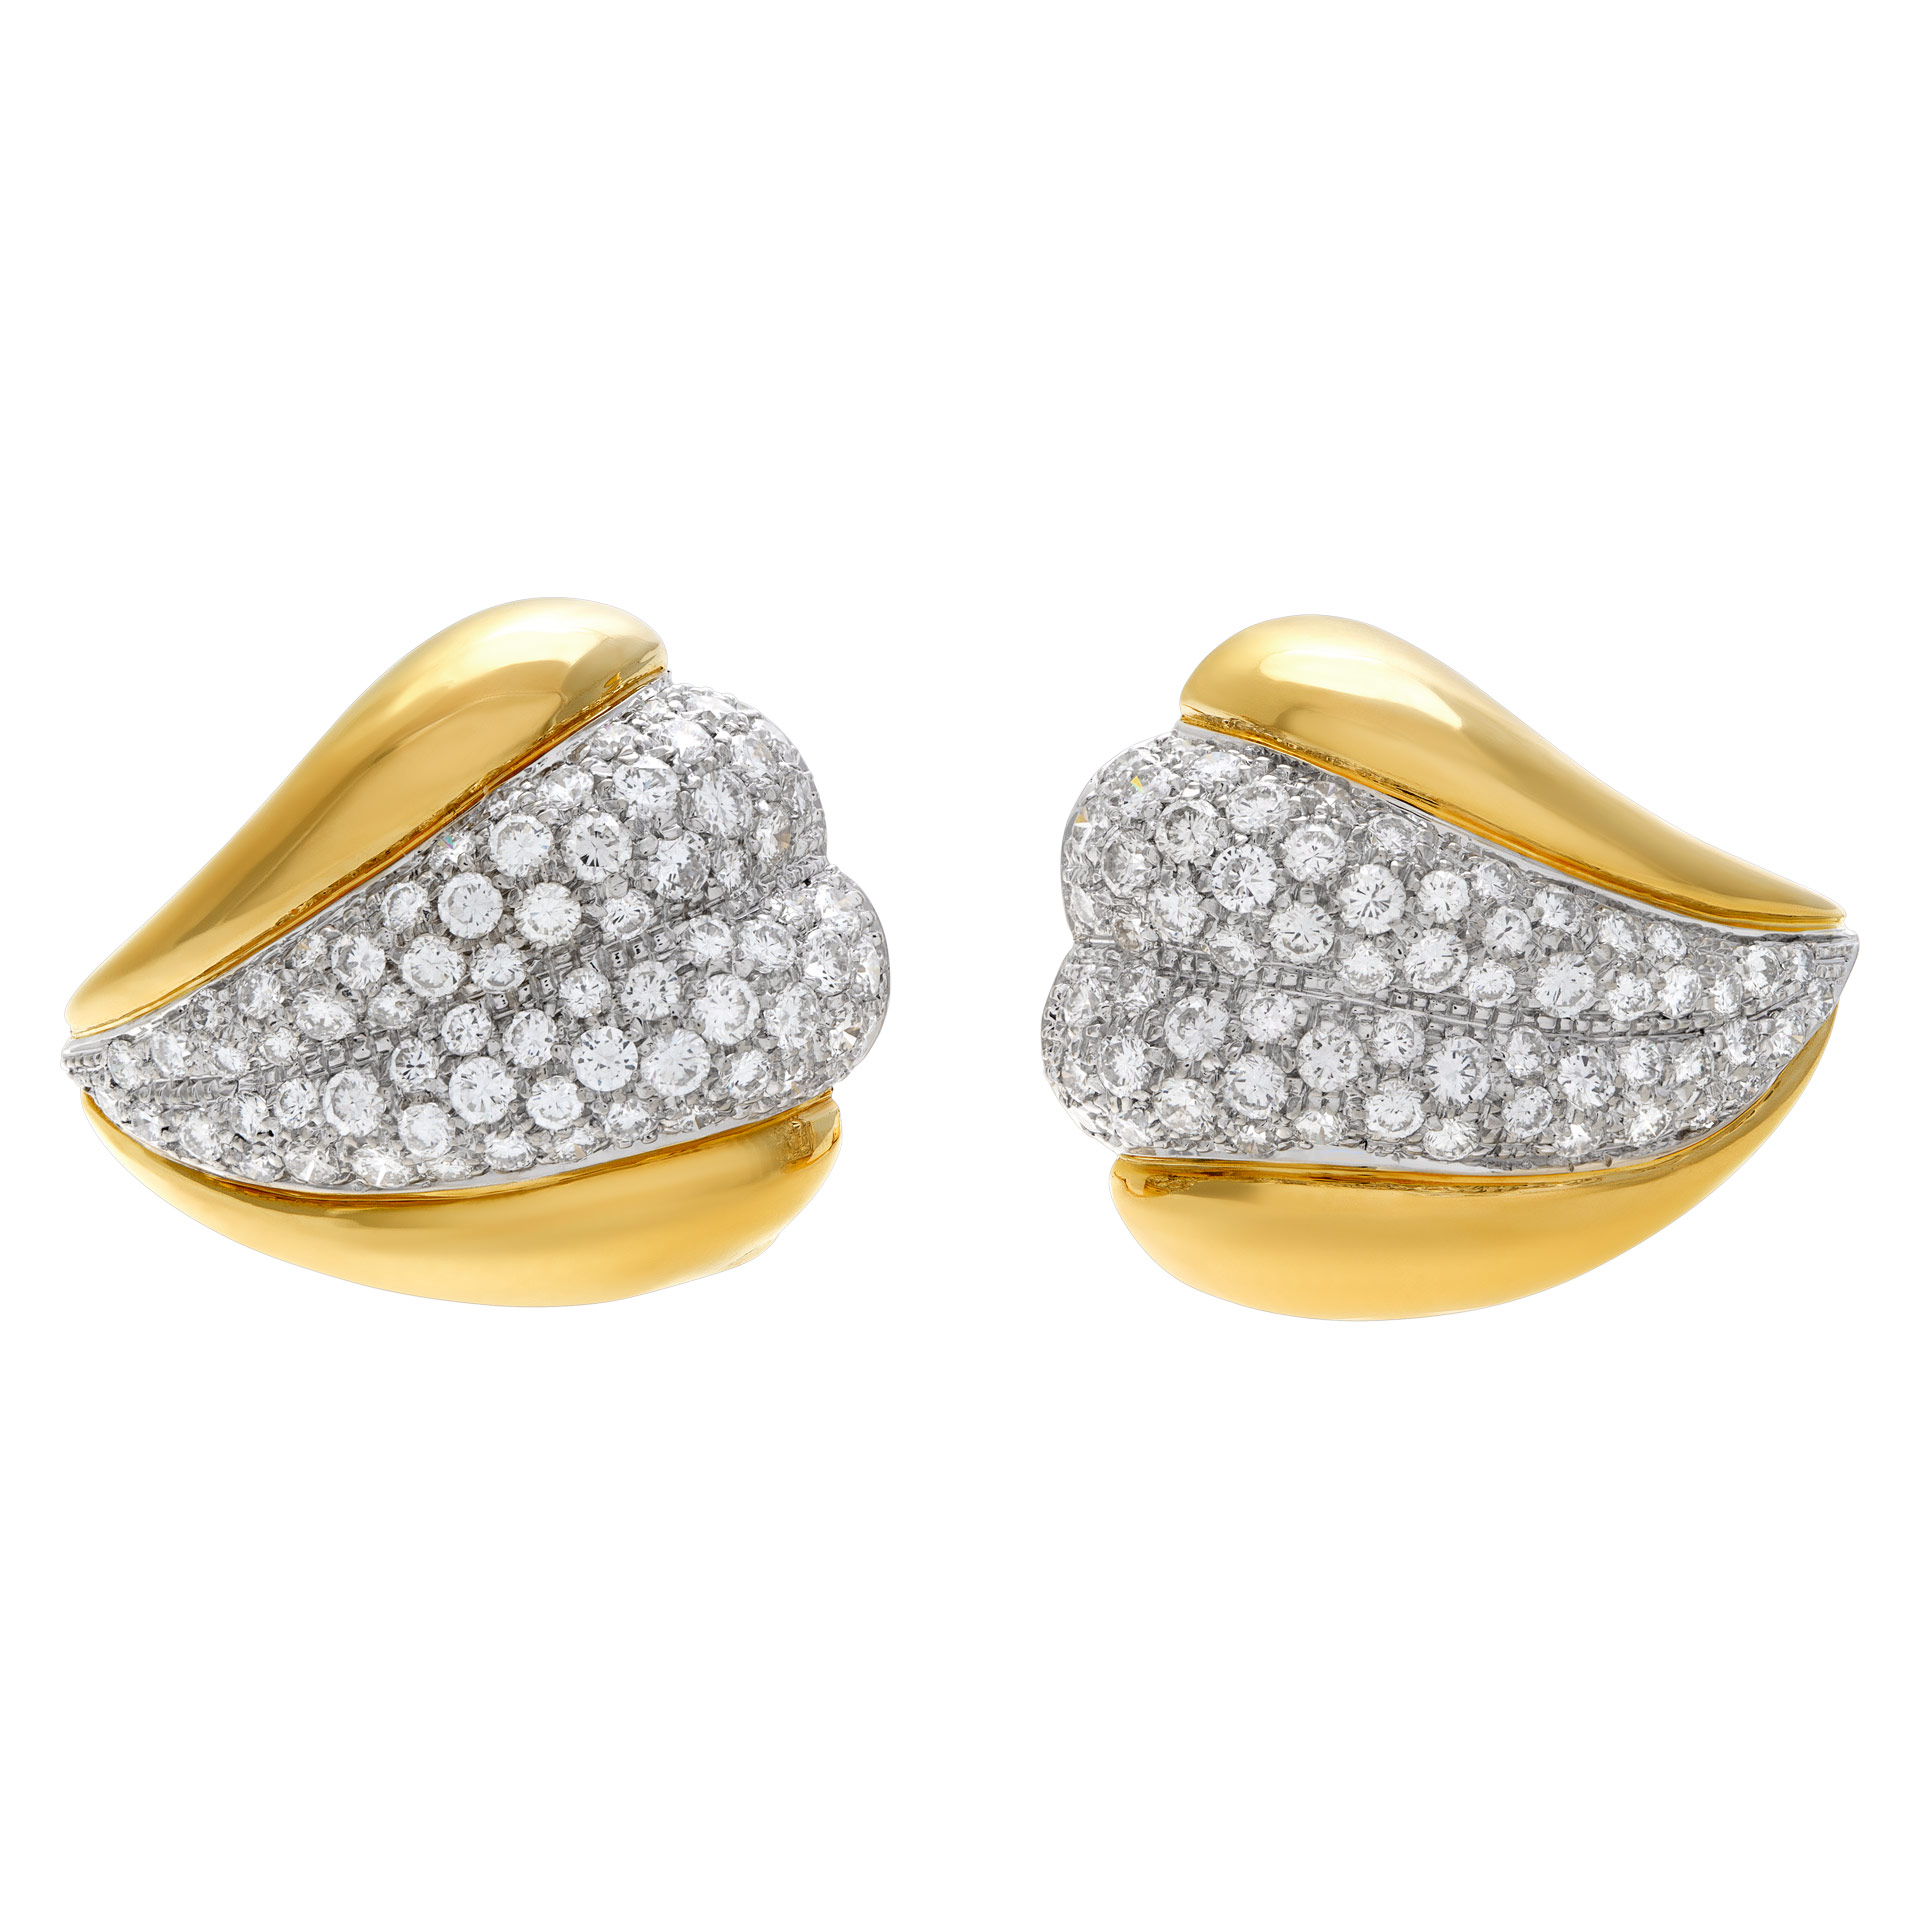 DAMIANI diamonds earrings 18k yellow gold (Stones) image 3